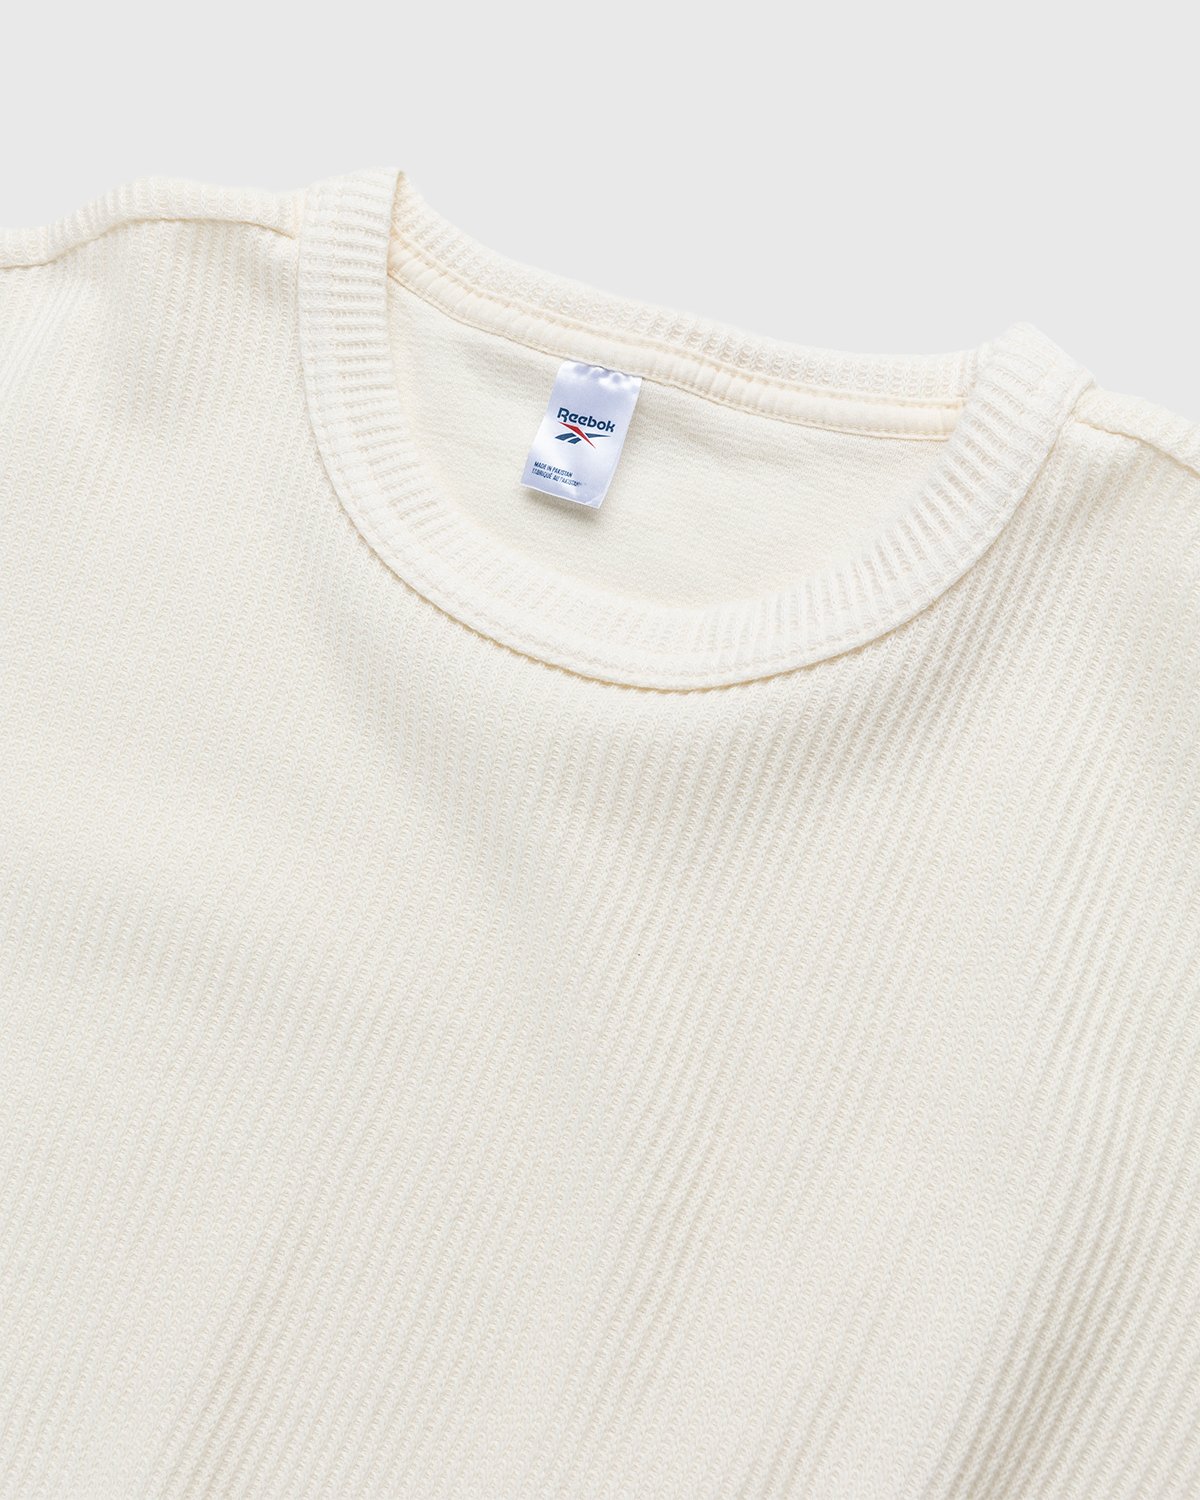 Reebok - Classics Natural Dye Waffle Crew Sweatshirt Non Dyed - Clothing - White - Image 4